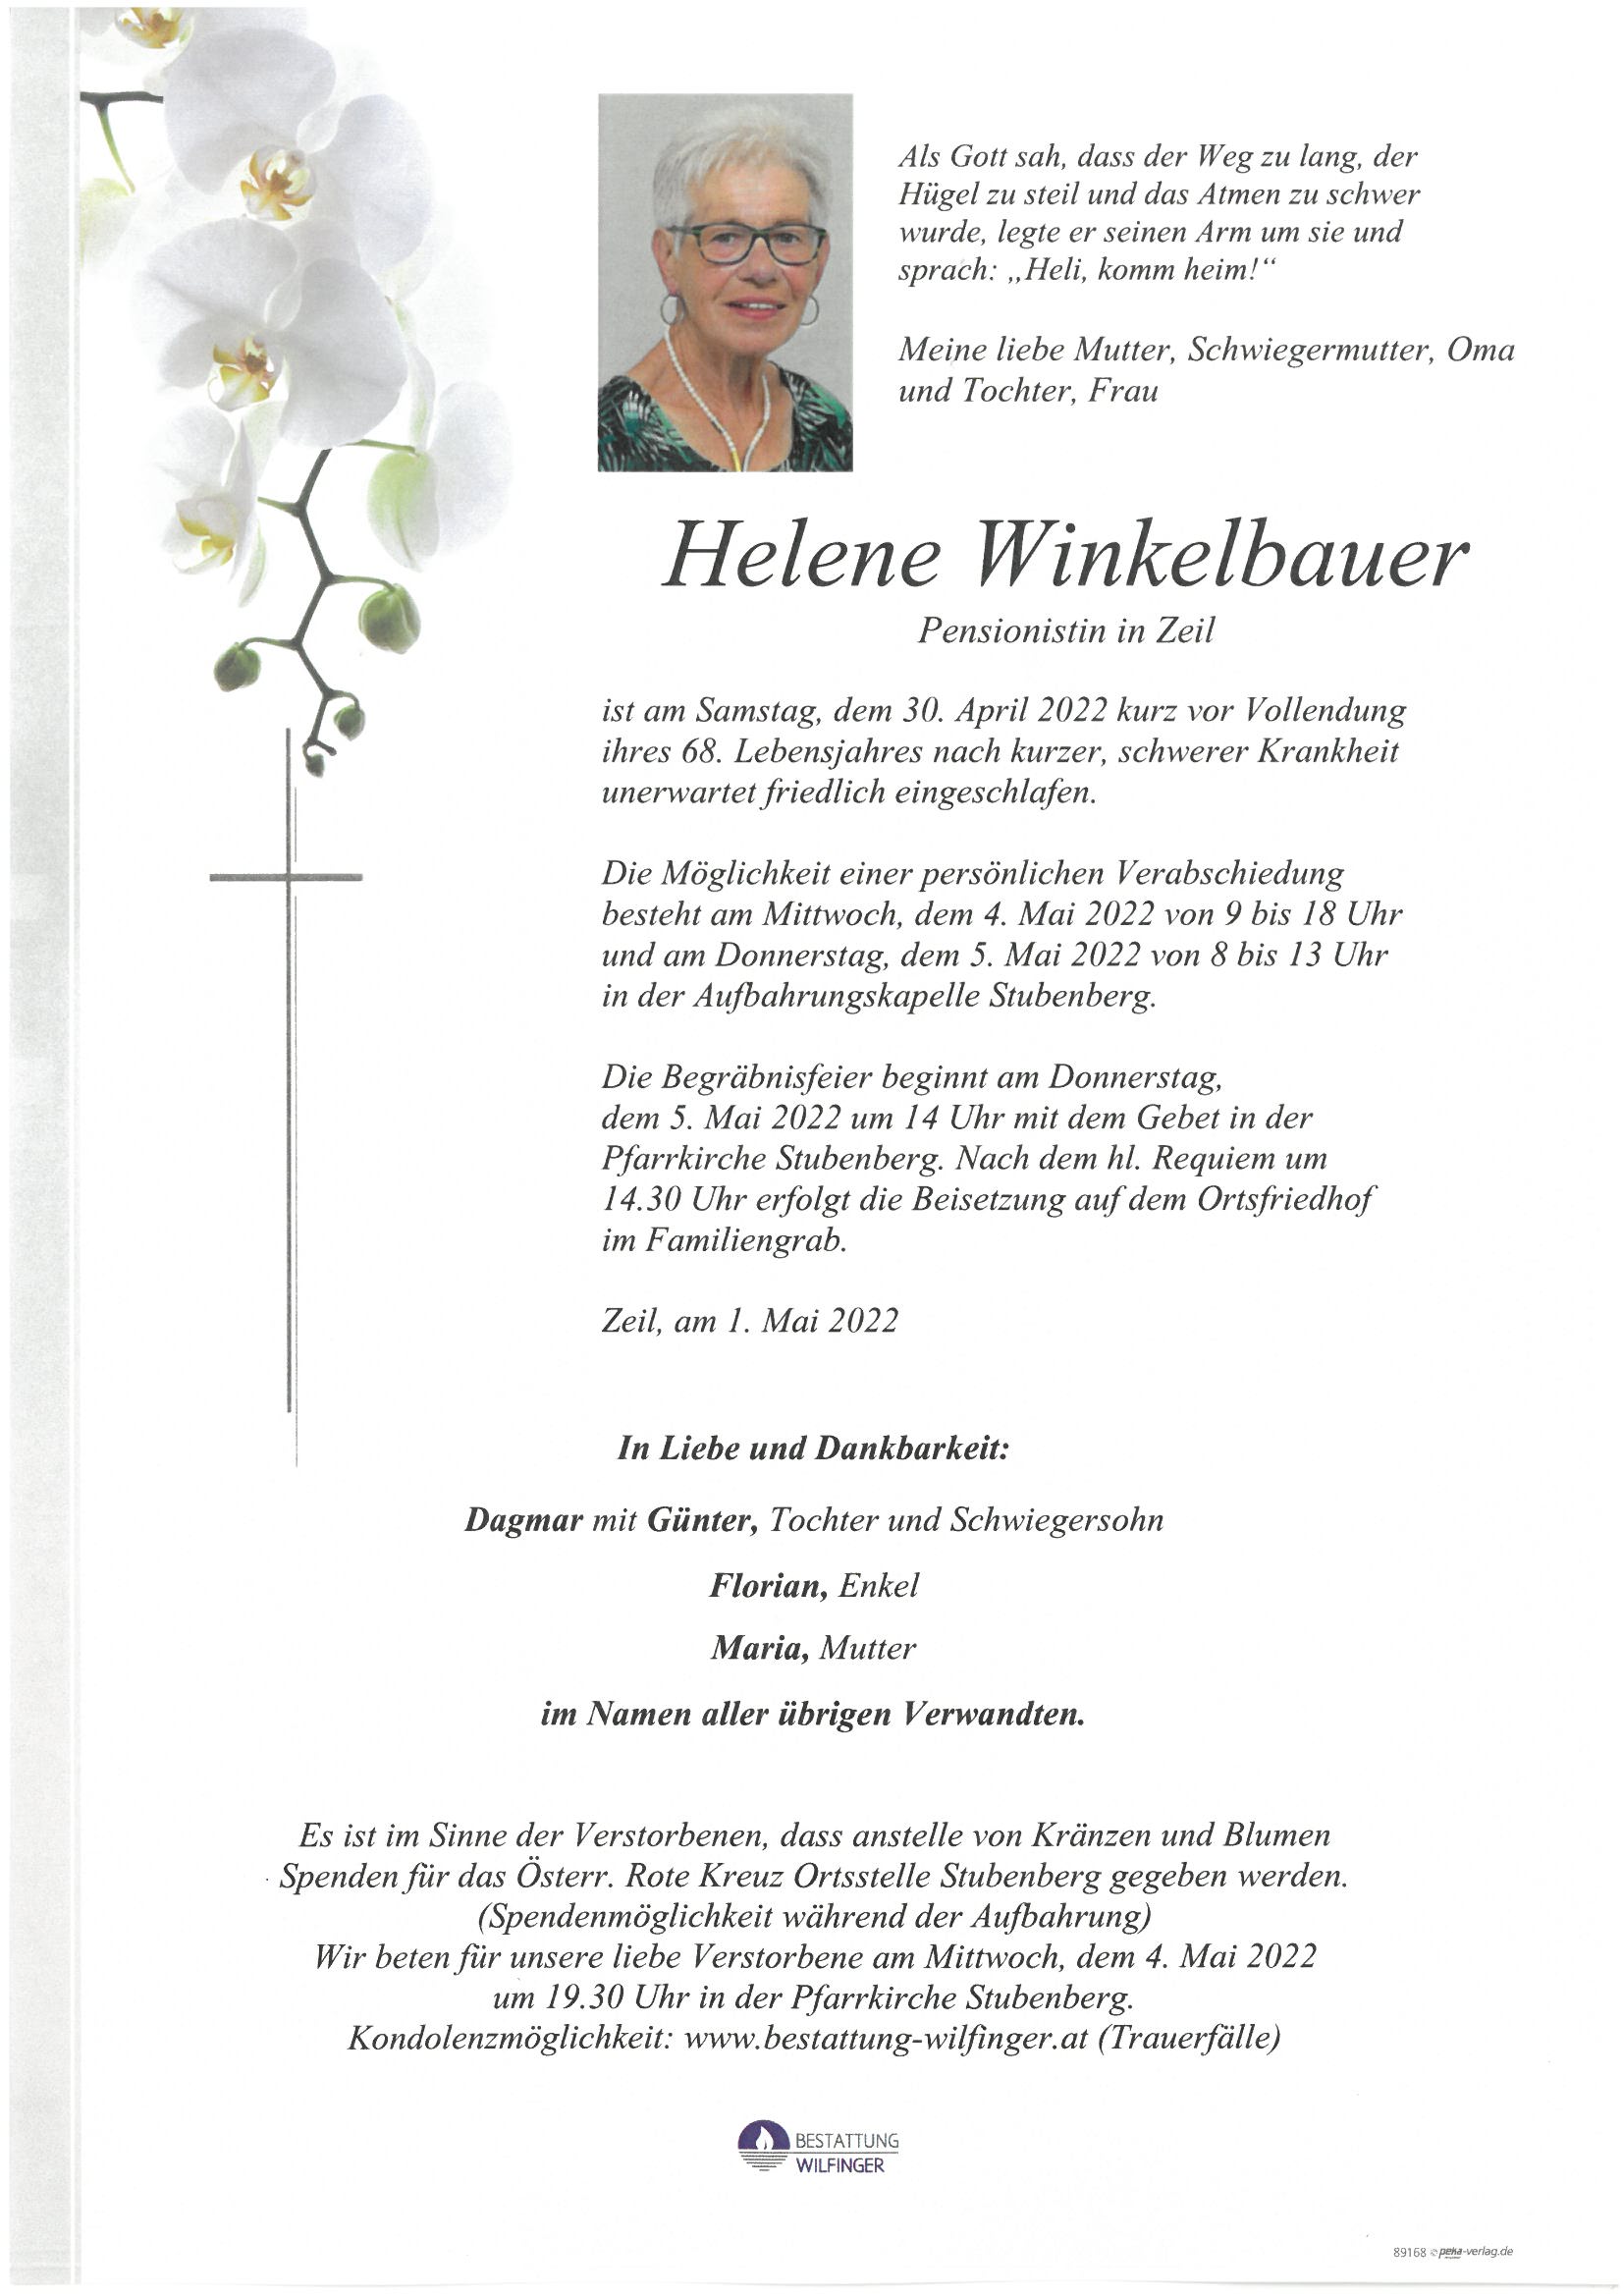 Helene Winkelbauer, Zeil